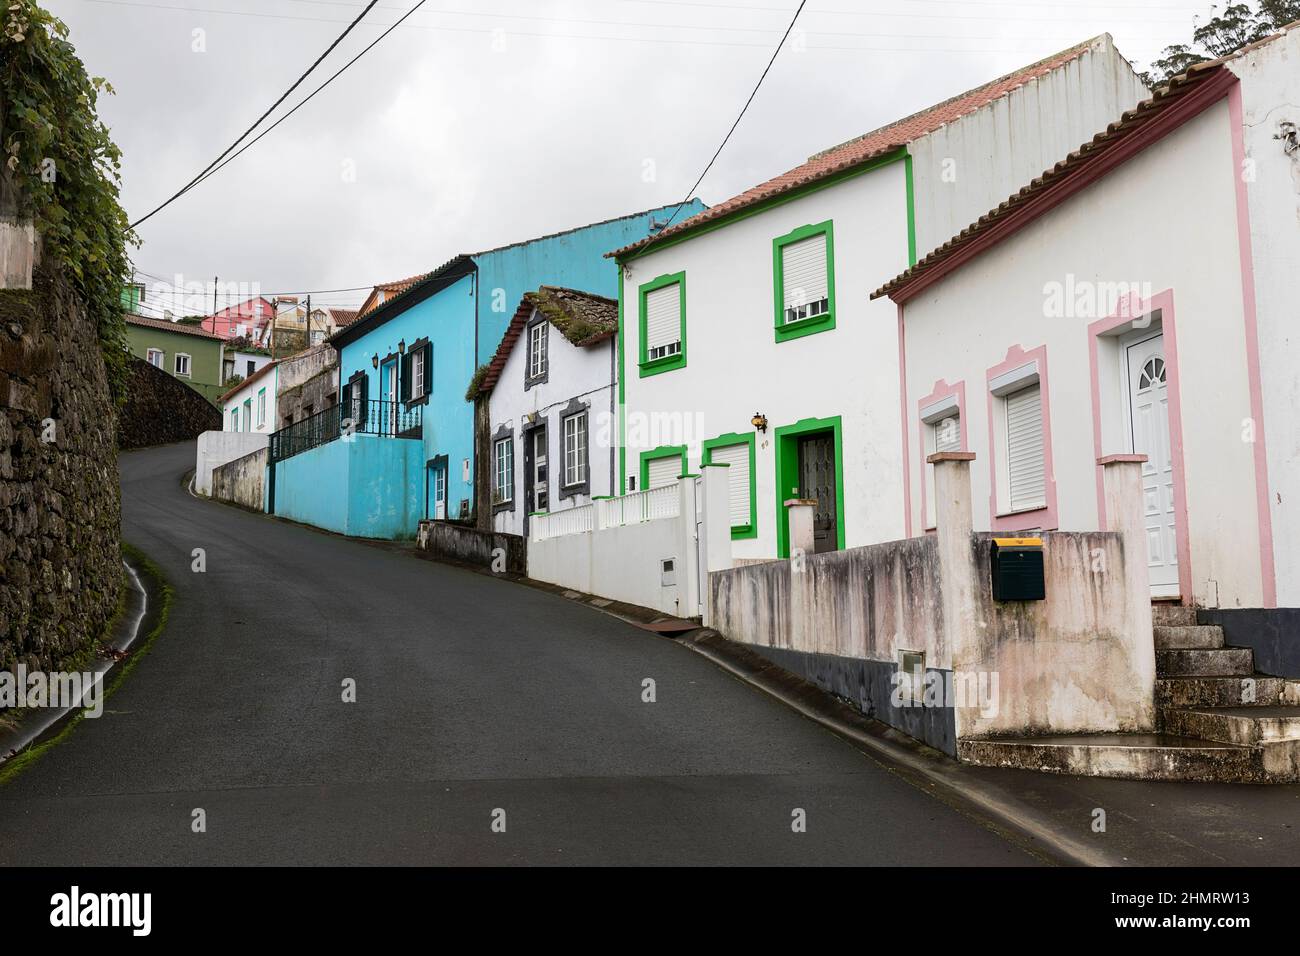 Stretta strada ripida con case colorate in piccola città sull'isola di Terceira Azzorre, Portgal Foto Stock